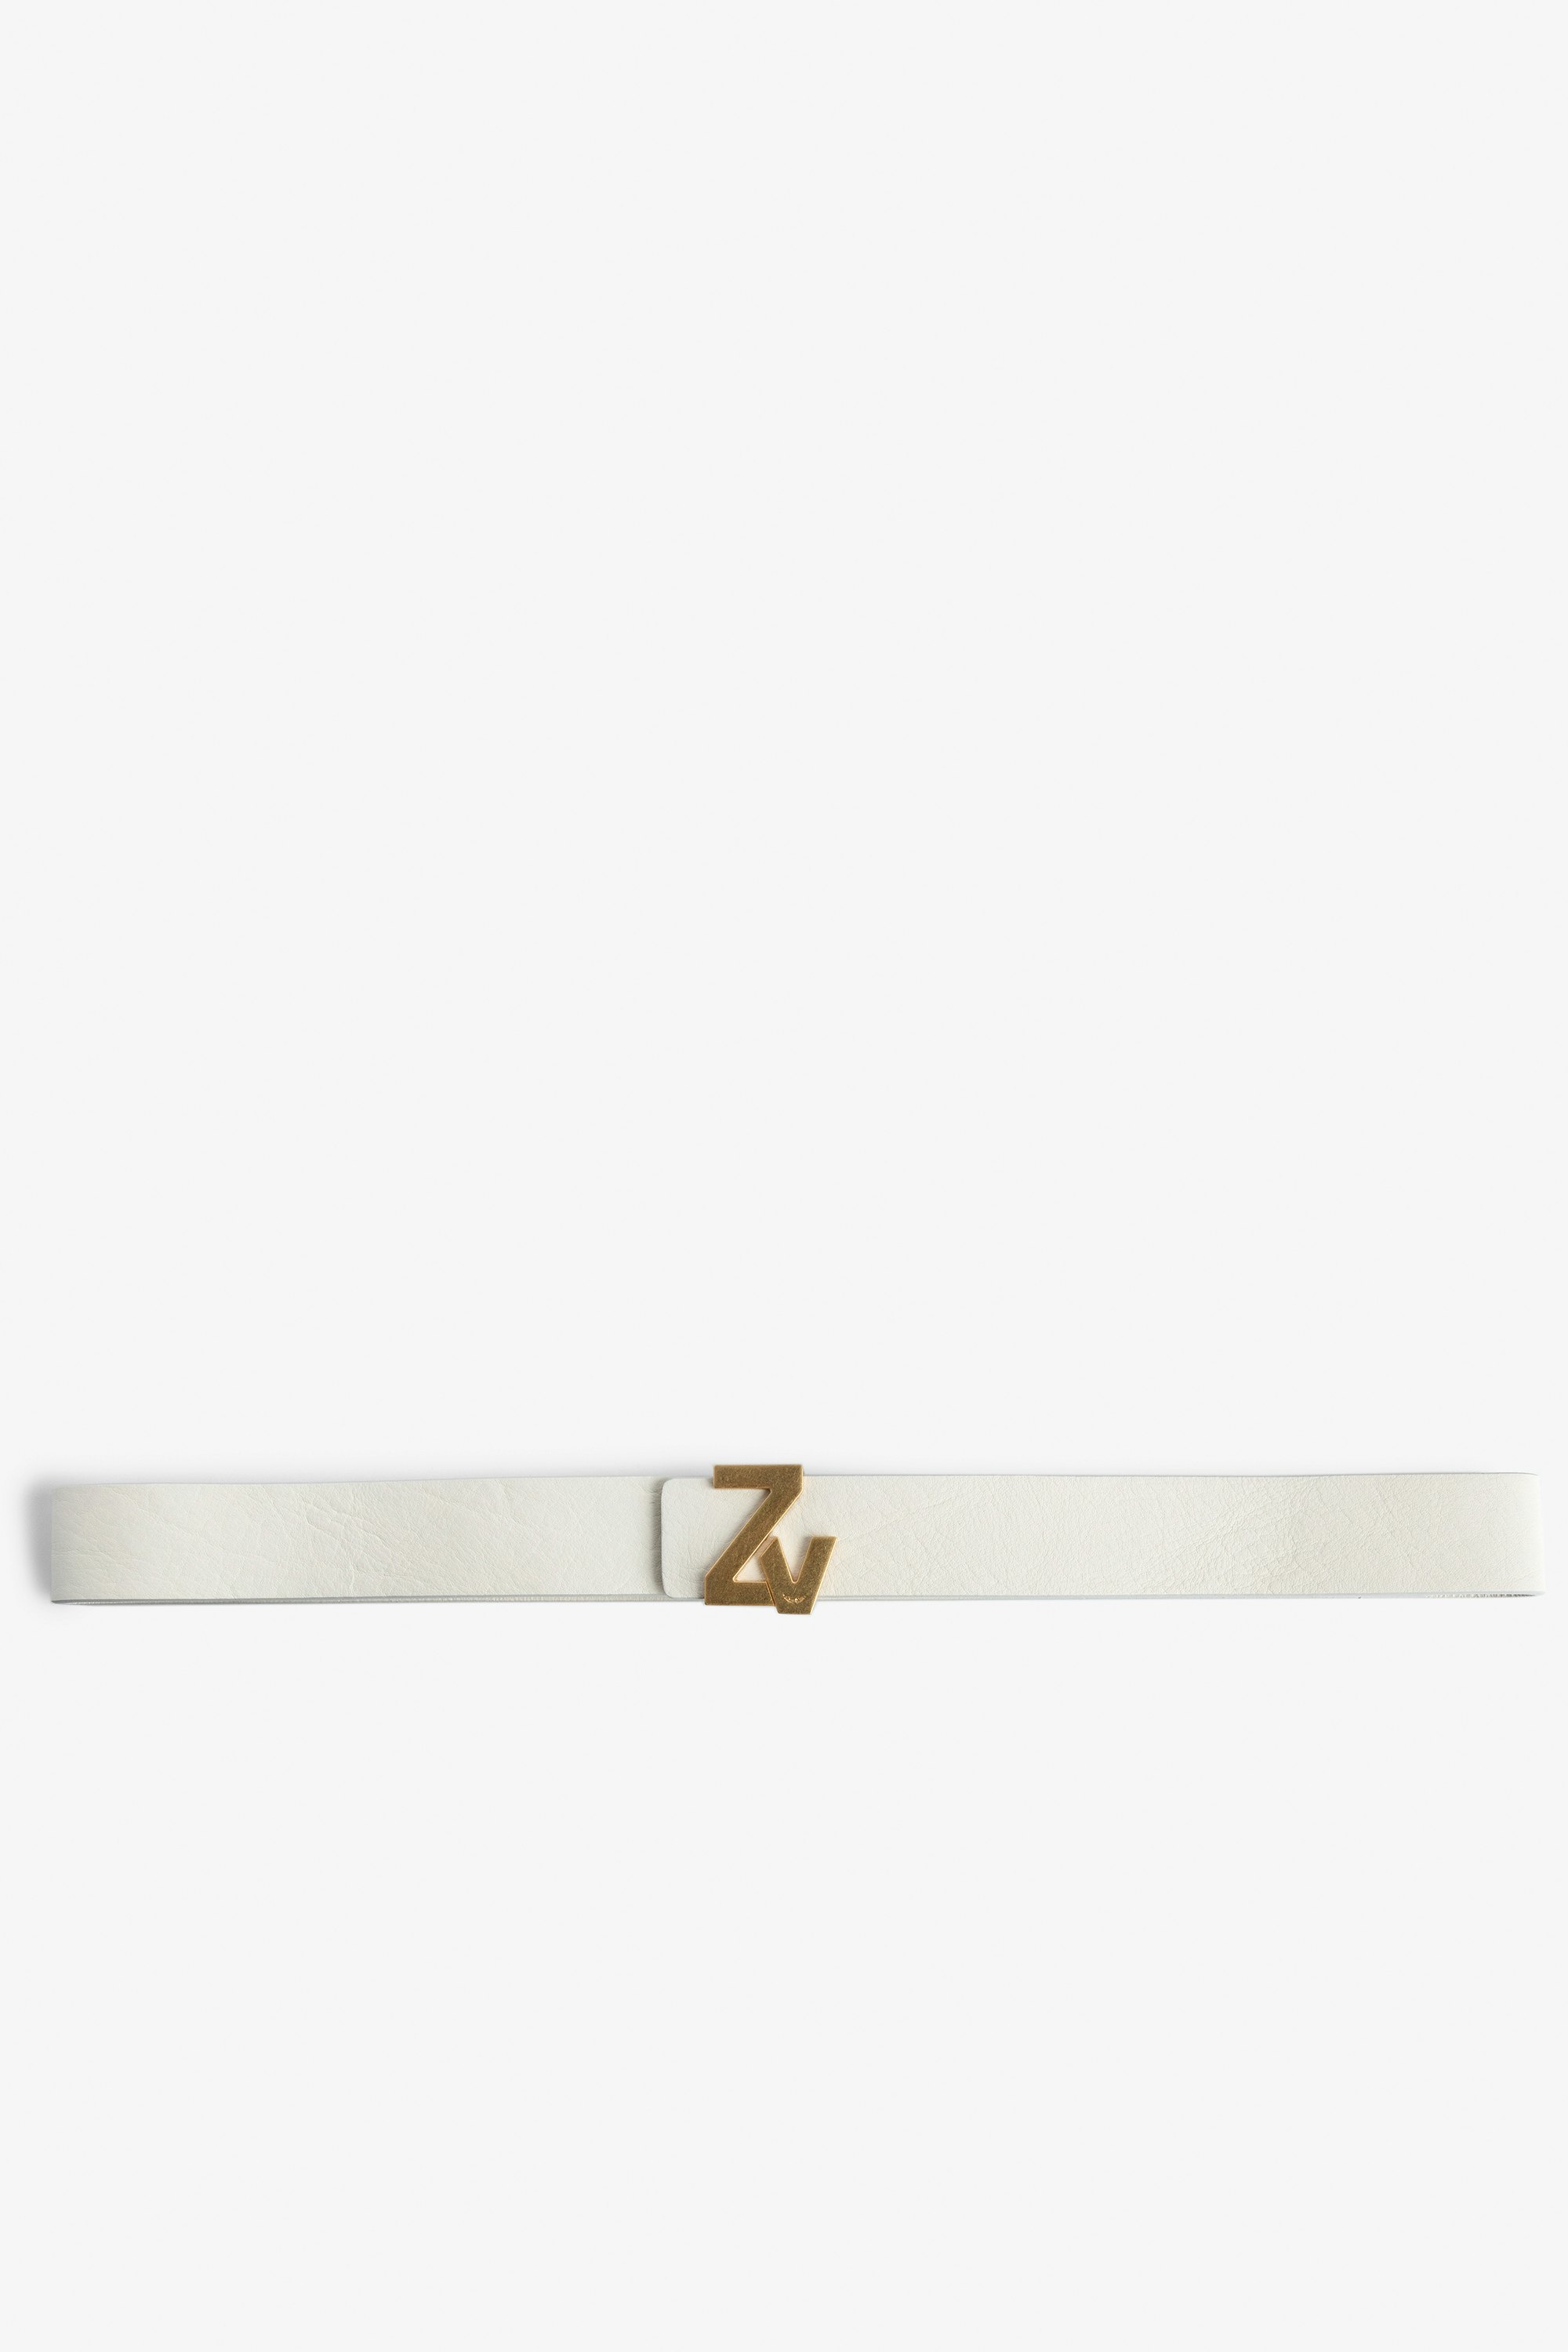 ZV Initiale La Belt Women's belt in ecru leather with gold-tone ZV buckle